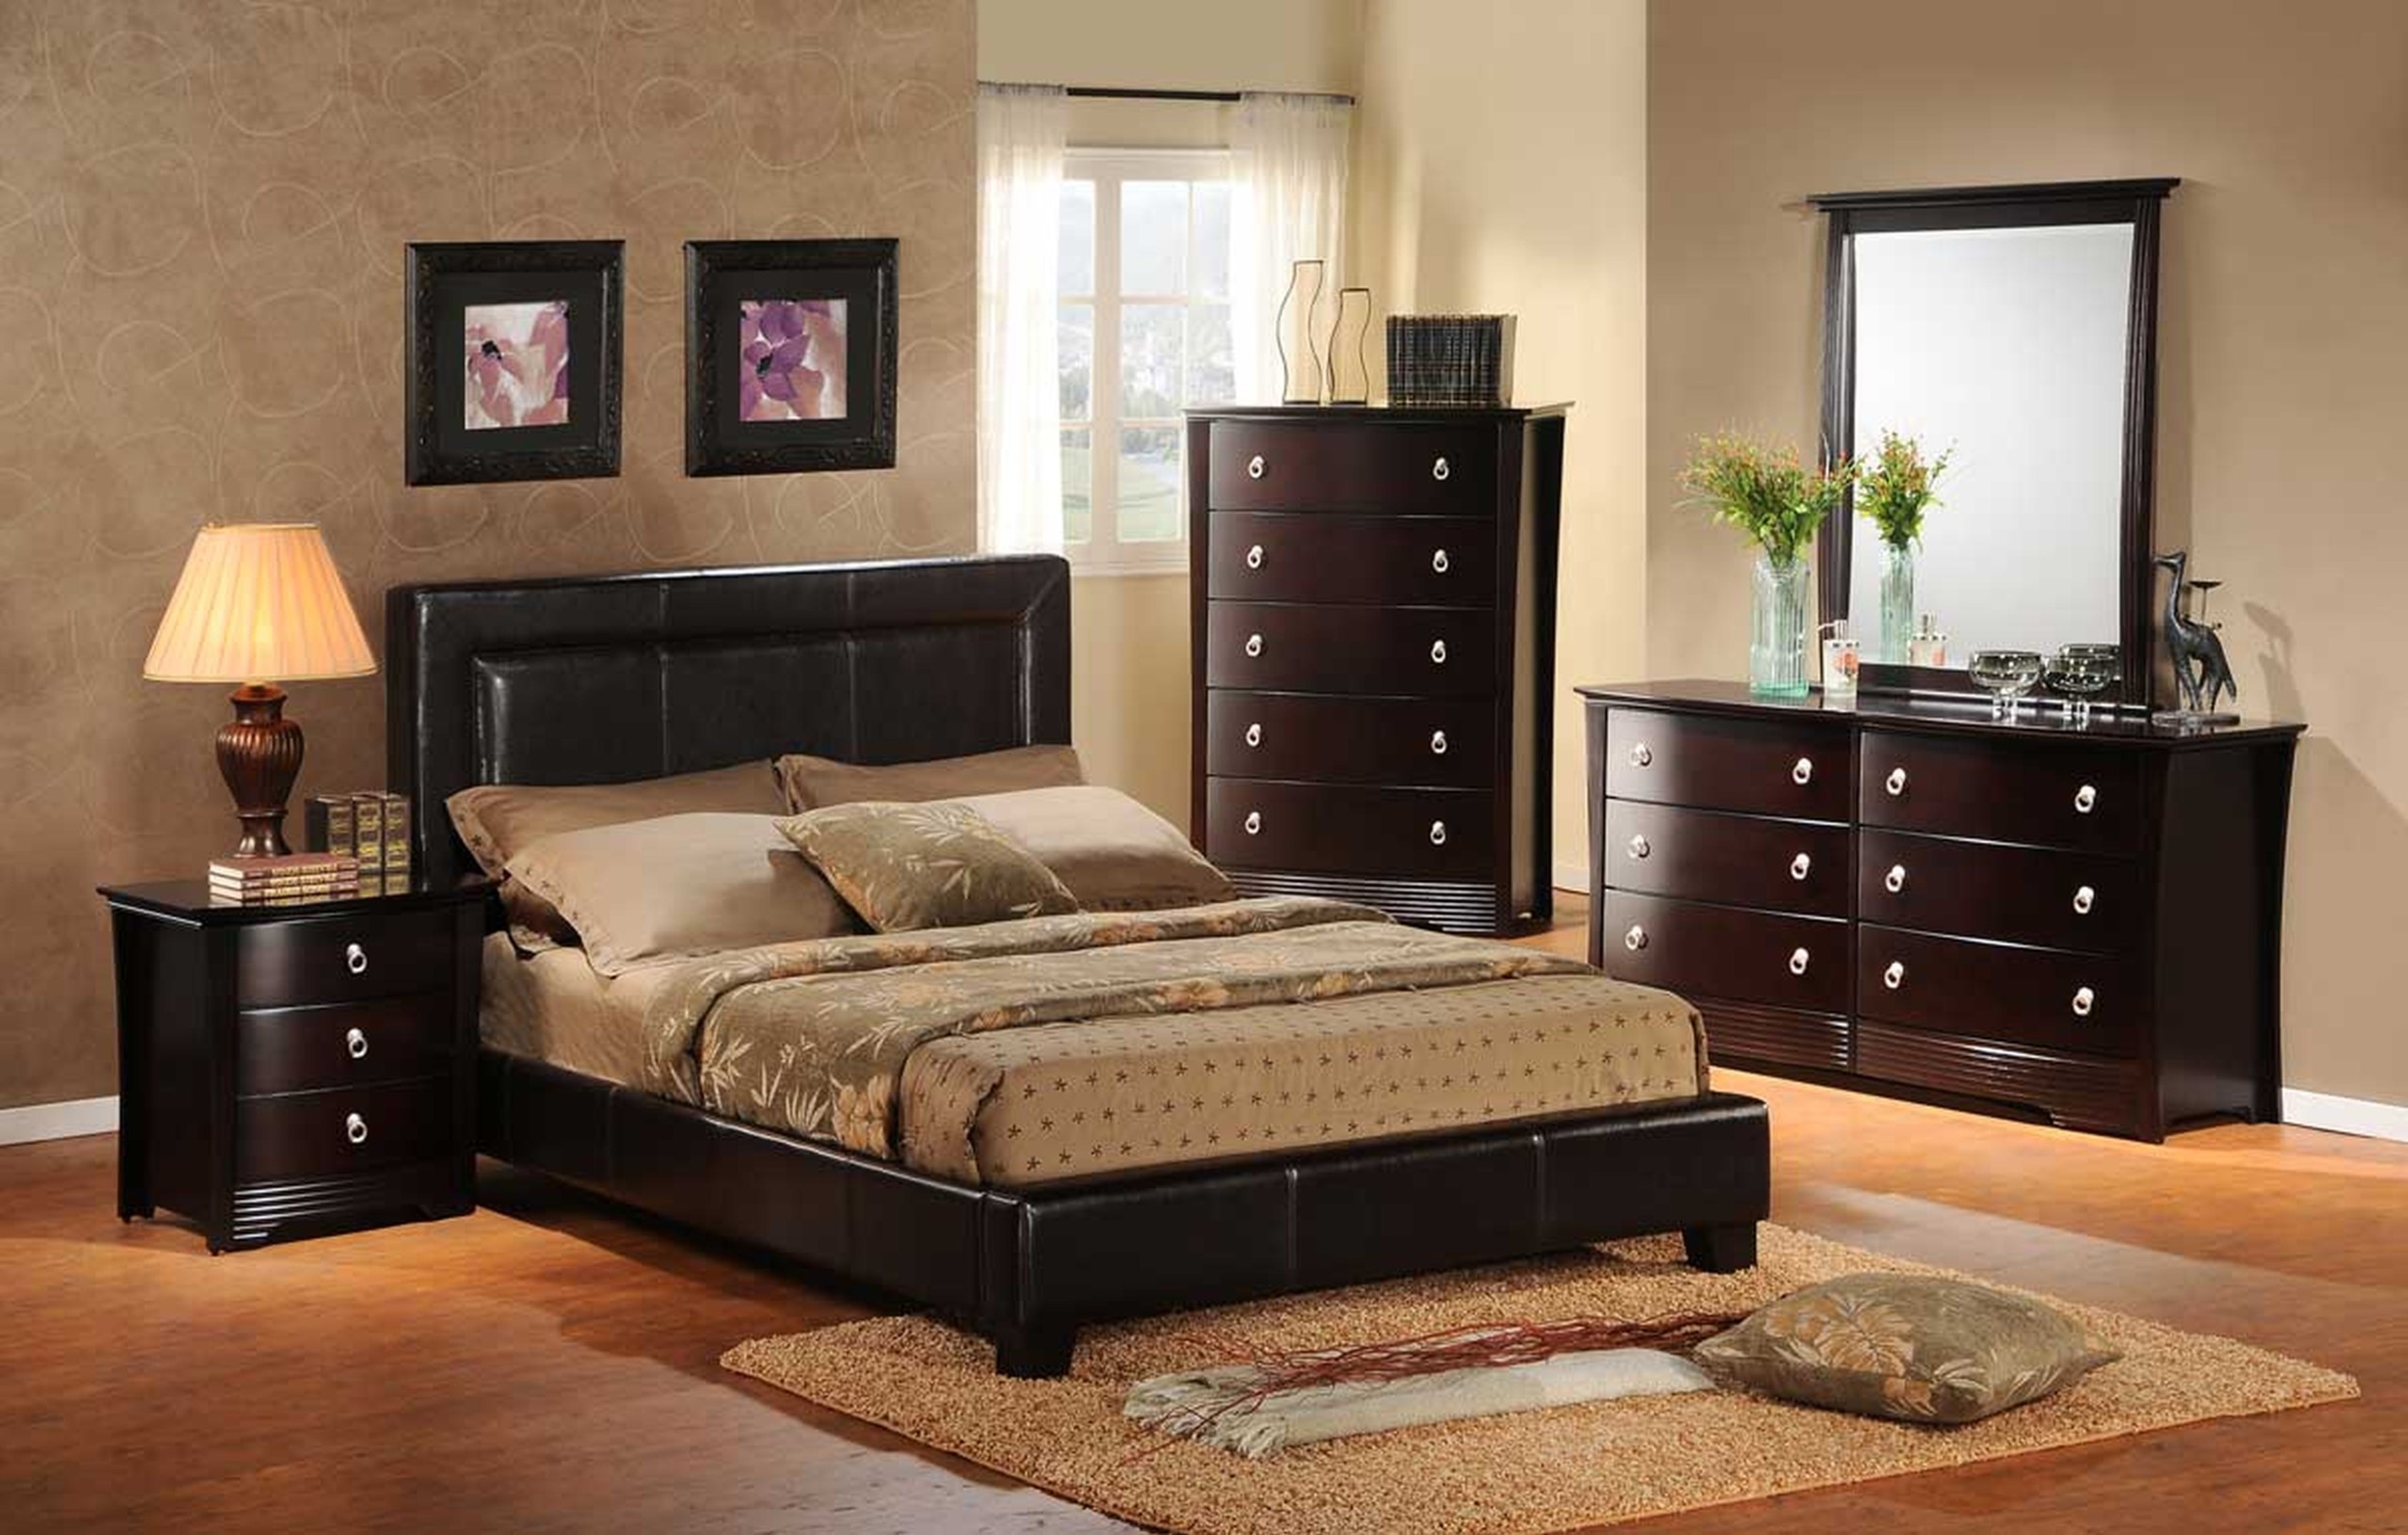 Brown Bedroom Furniture Ideas on Foter